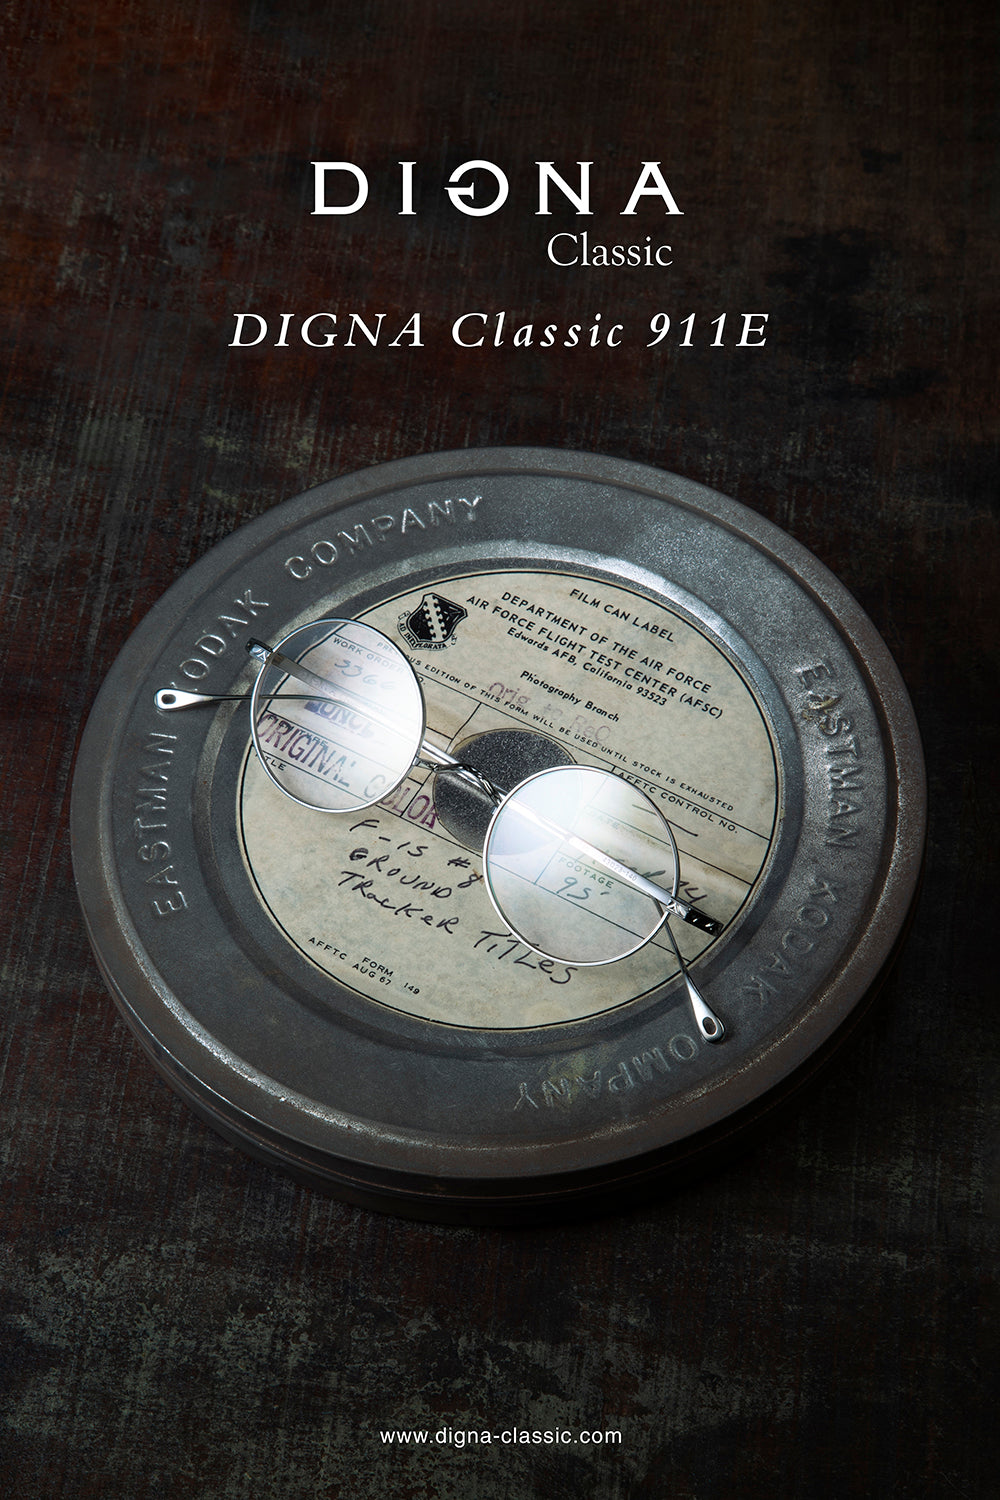 DIGNA Classic 911E